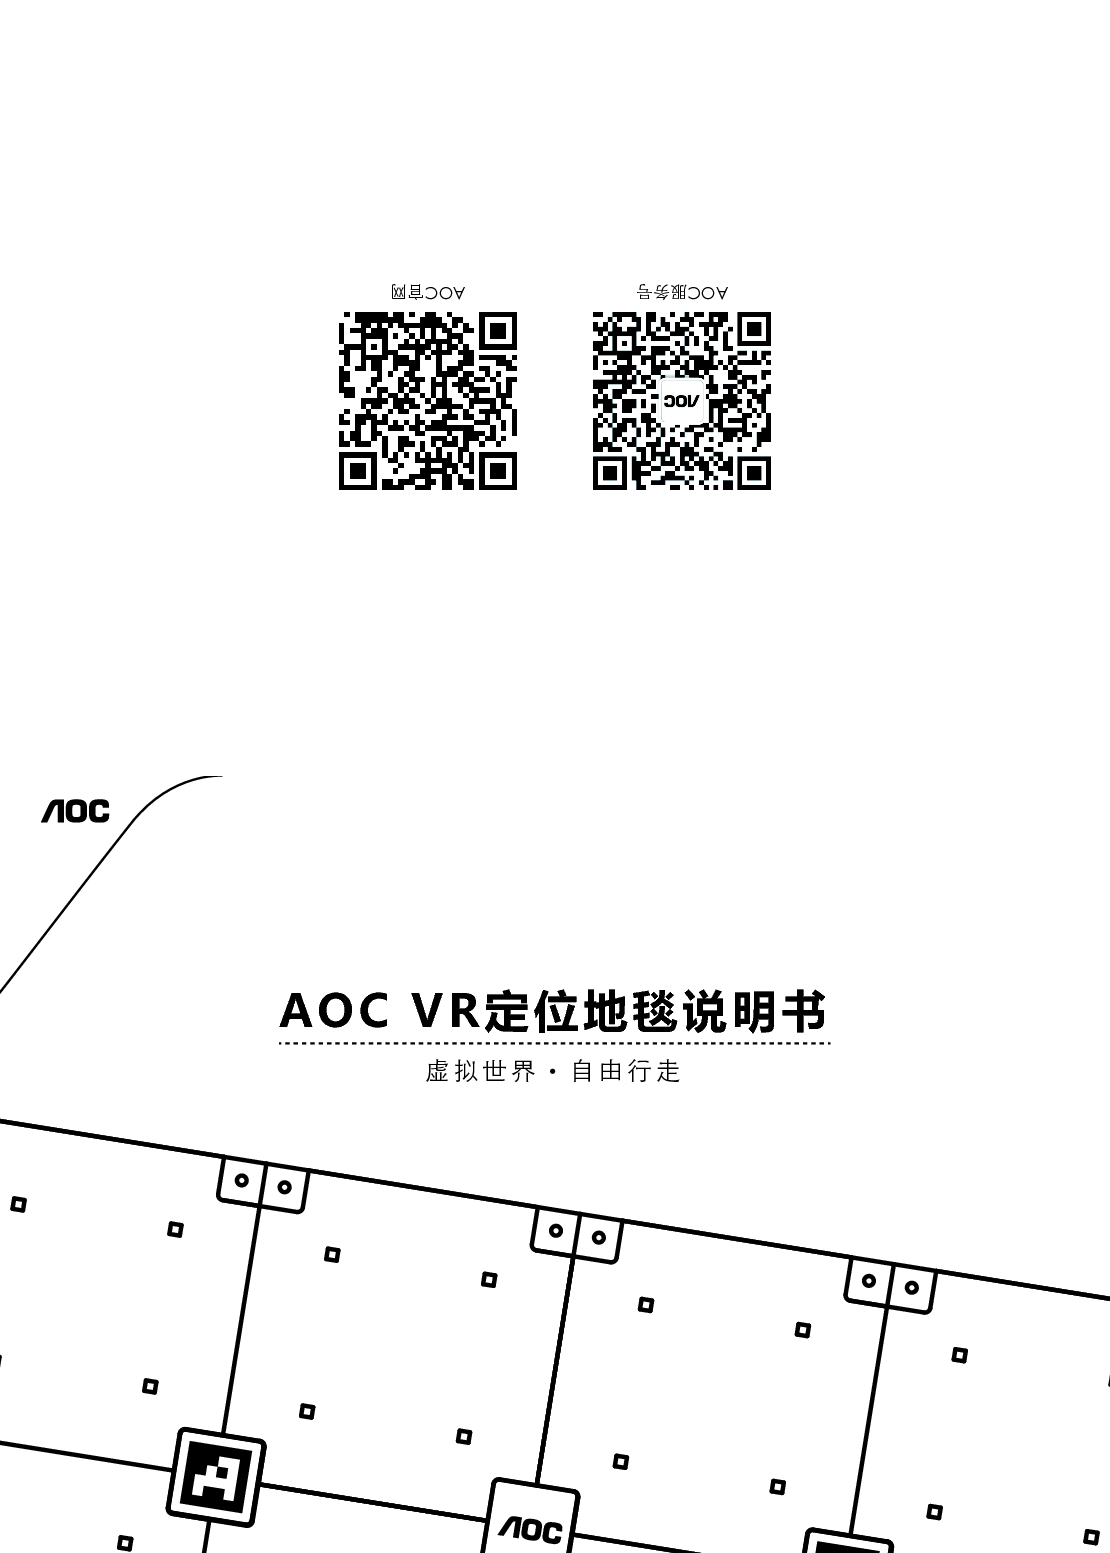 AOC VR 定位地毯 用户手册 第1页